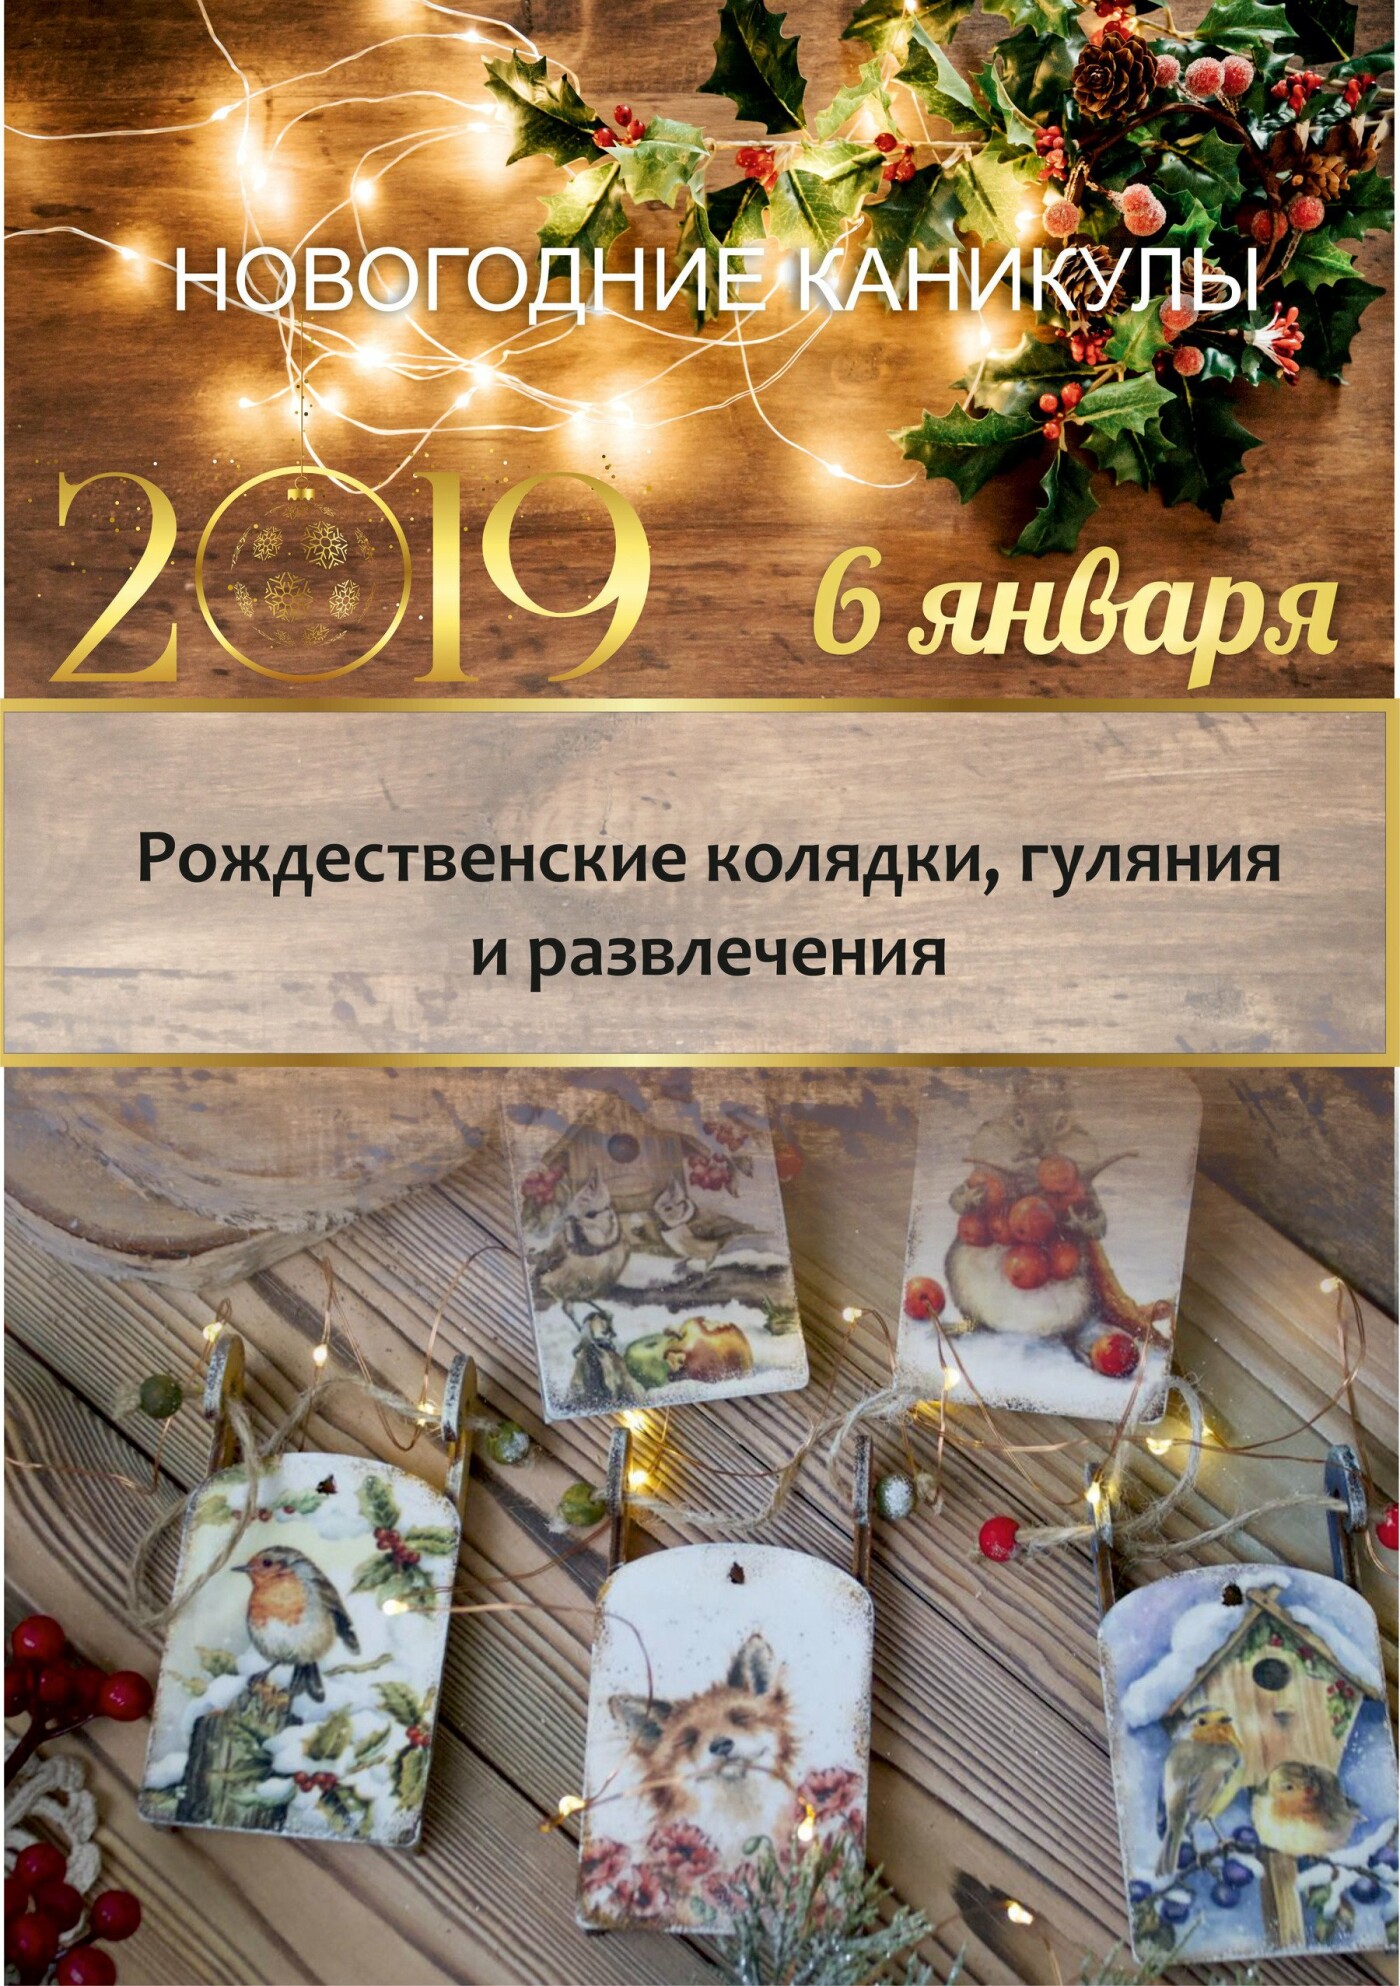 Встречайте Новый год-2019 всей семьей в санатории «Айвазовское»!, фото-8